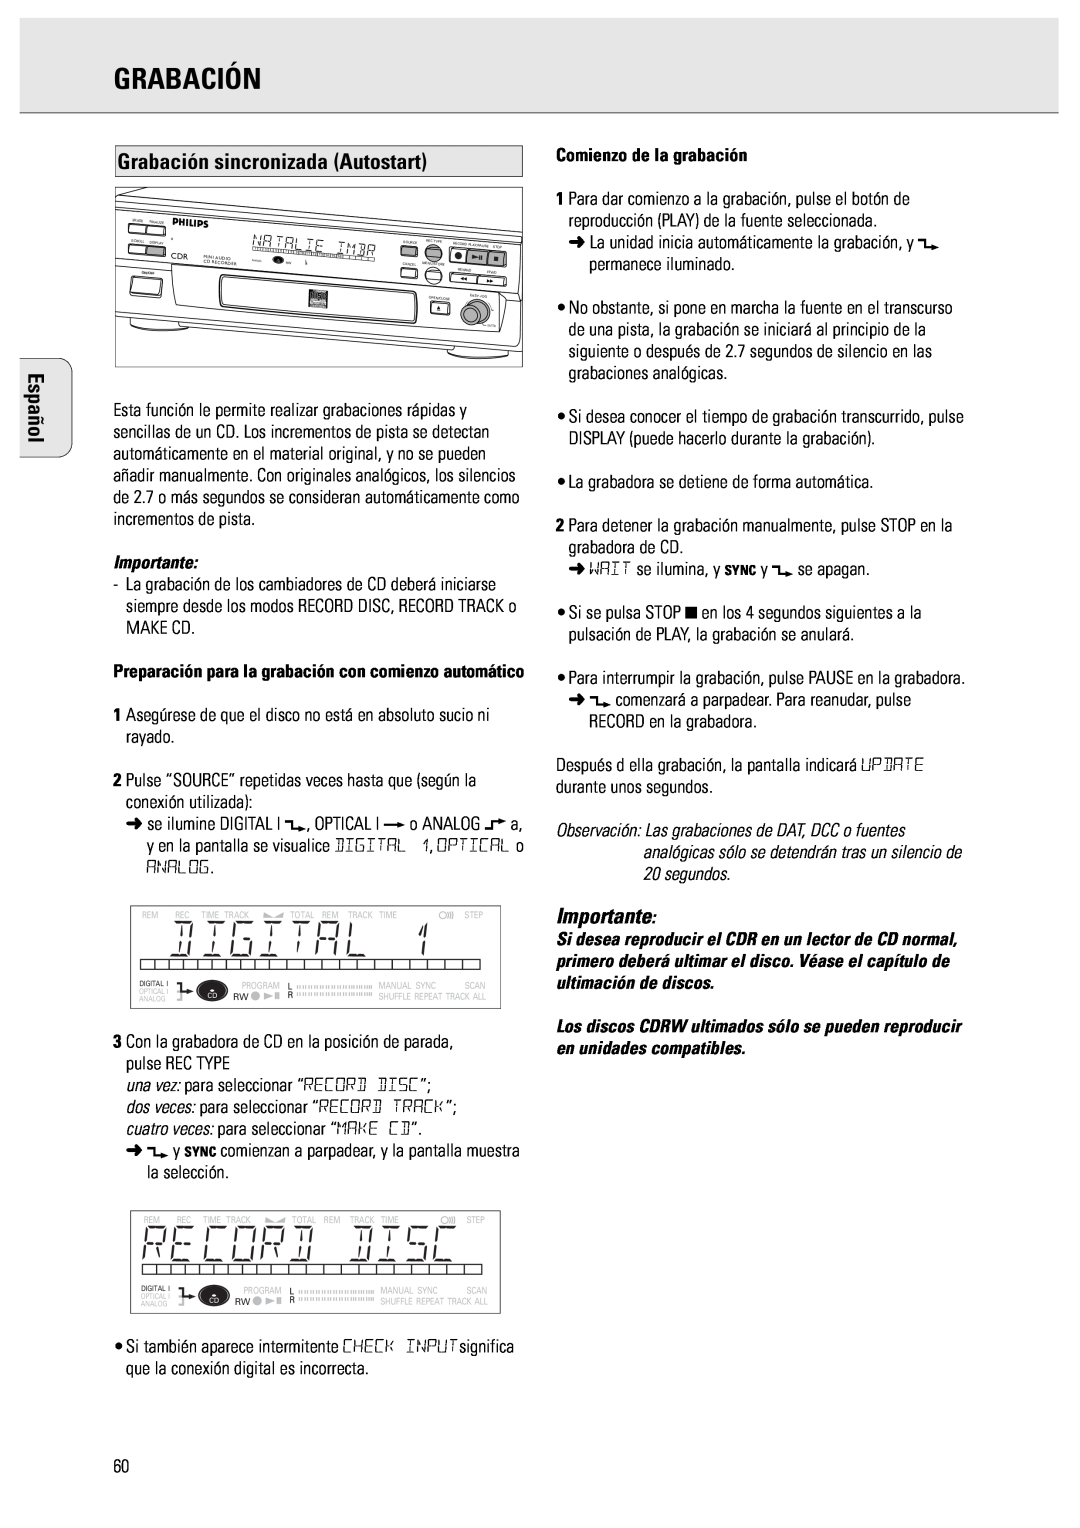 Philips CDR570 manual Español, Grabación sincronizada Autostart, Importante, Comienzo de la grabación 